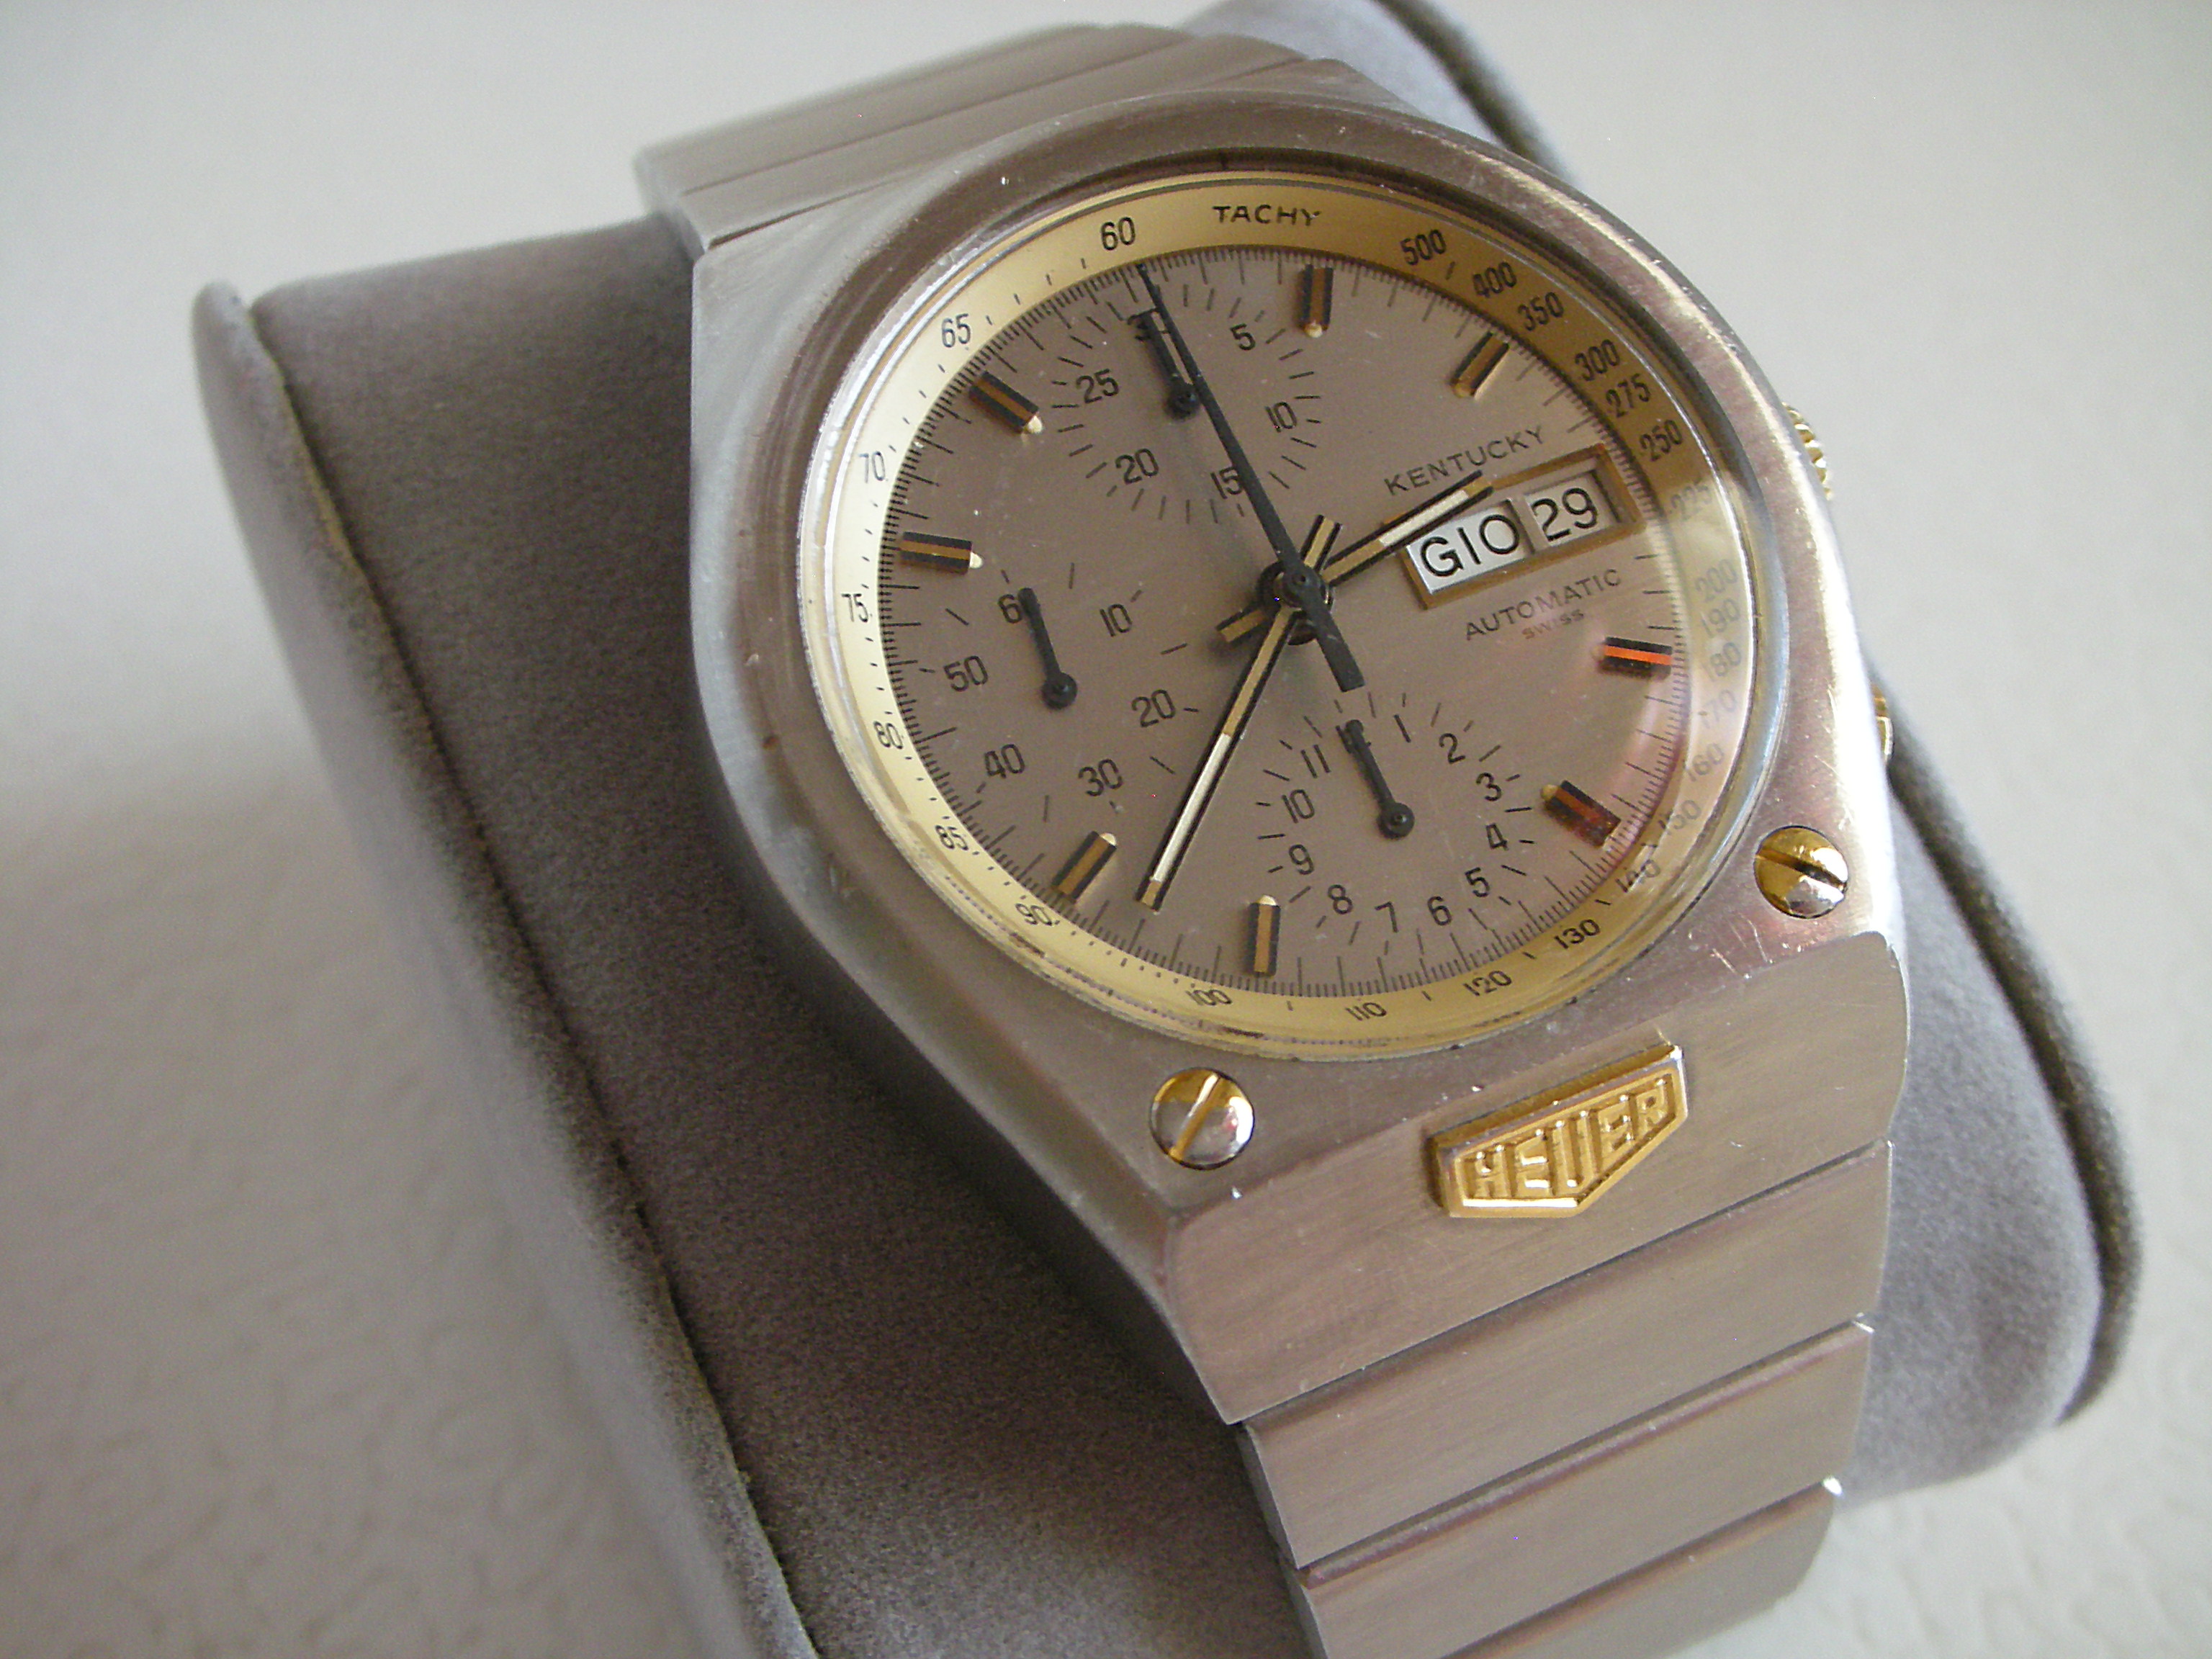 Đồng hồ nữ chính hãng Royal Crown 6305 dây đá